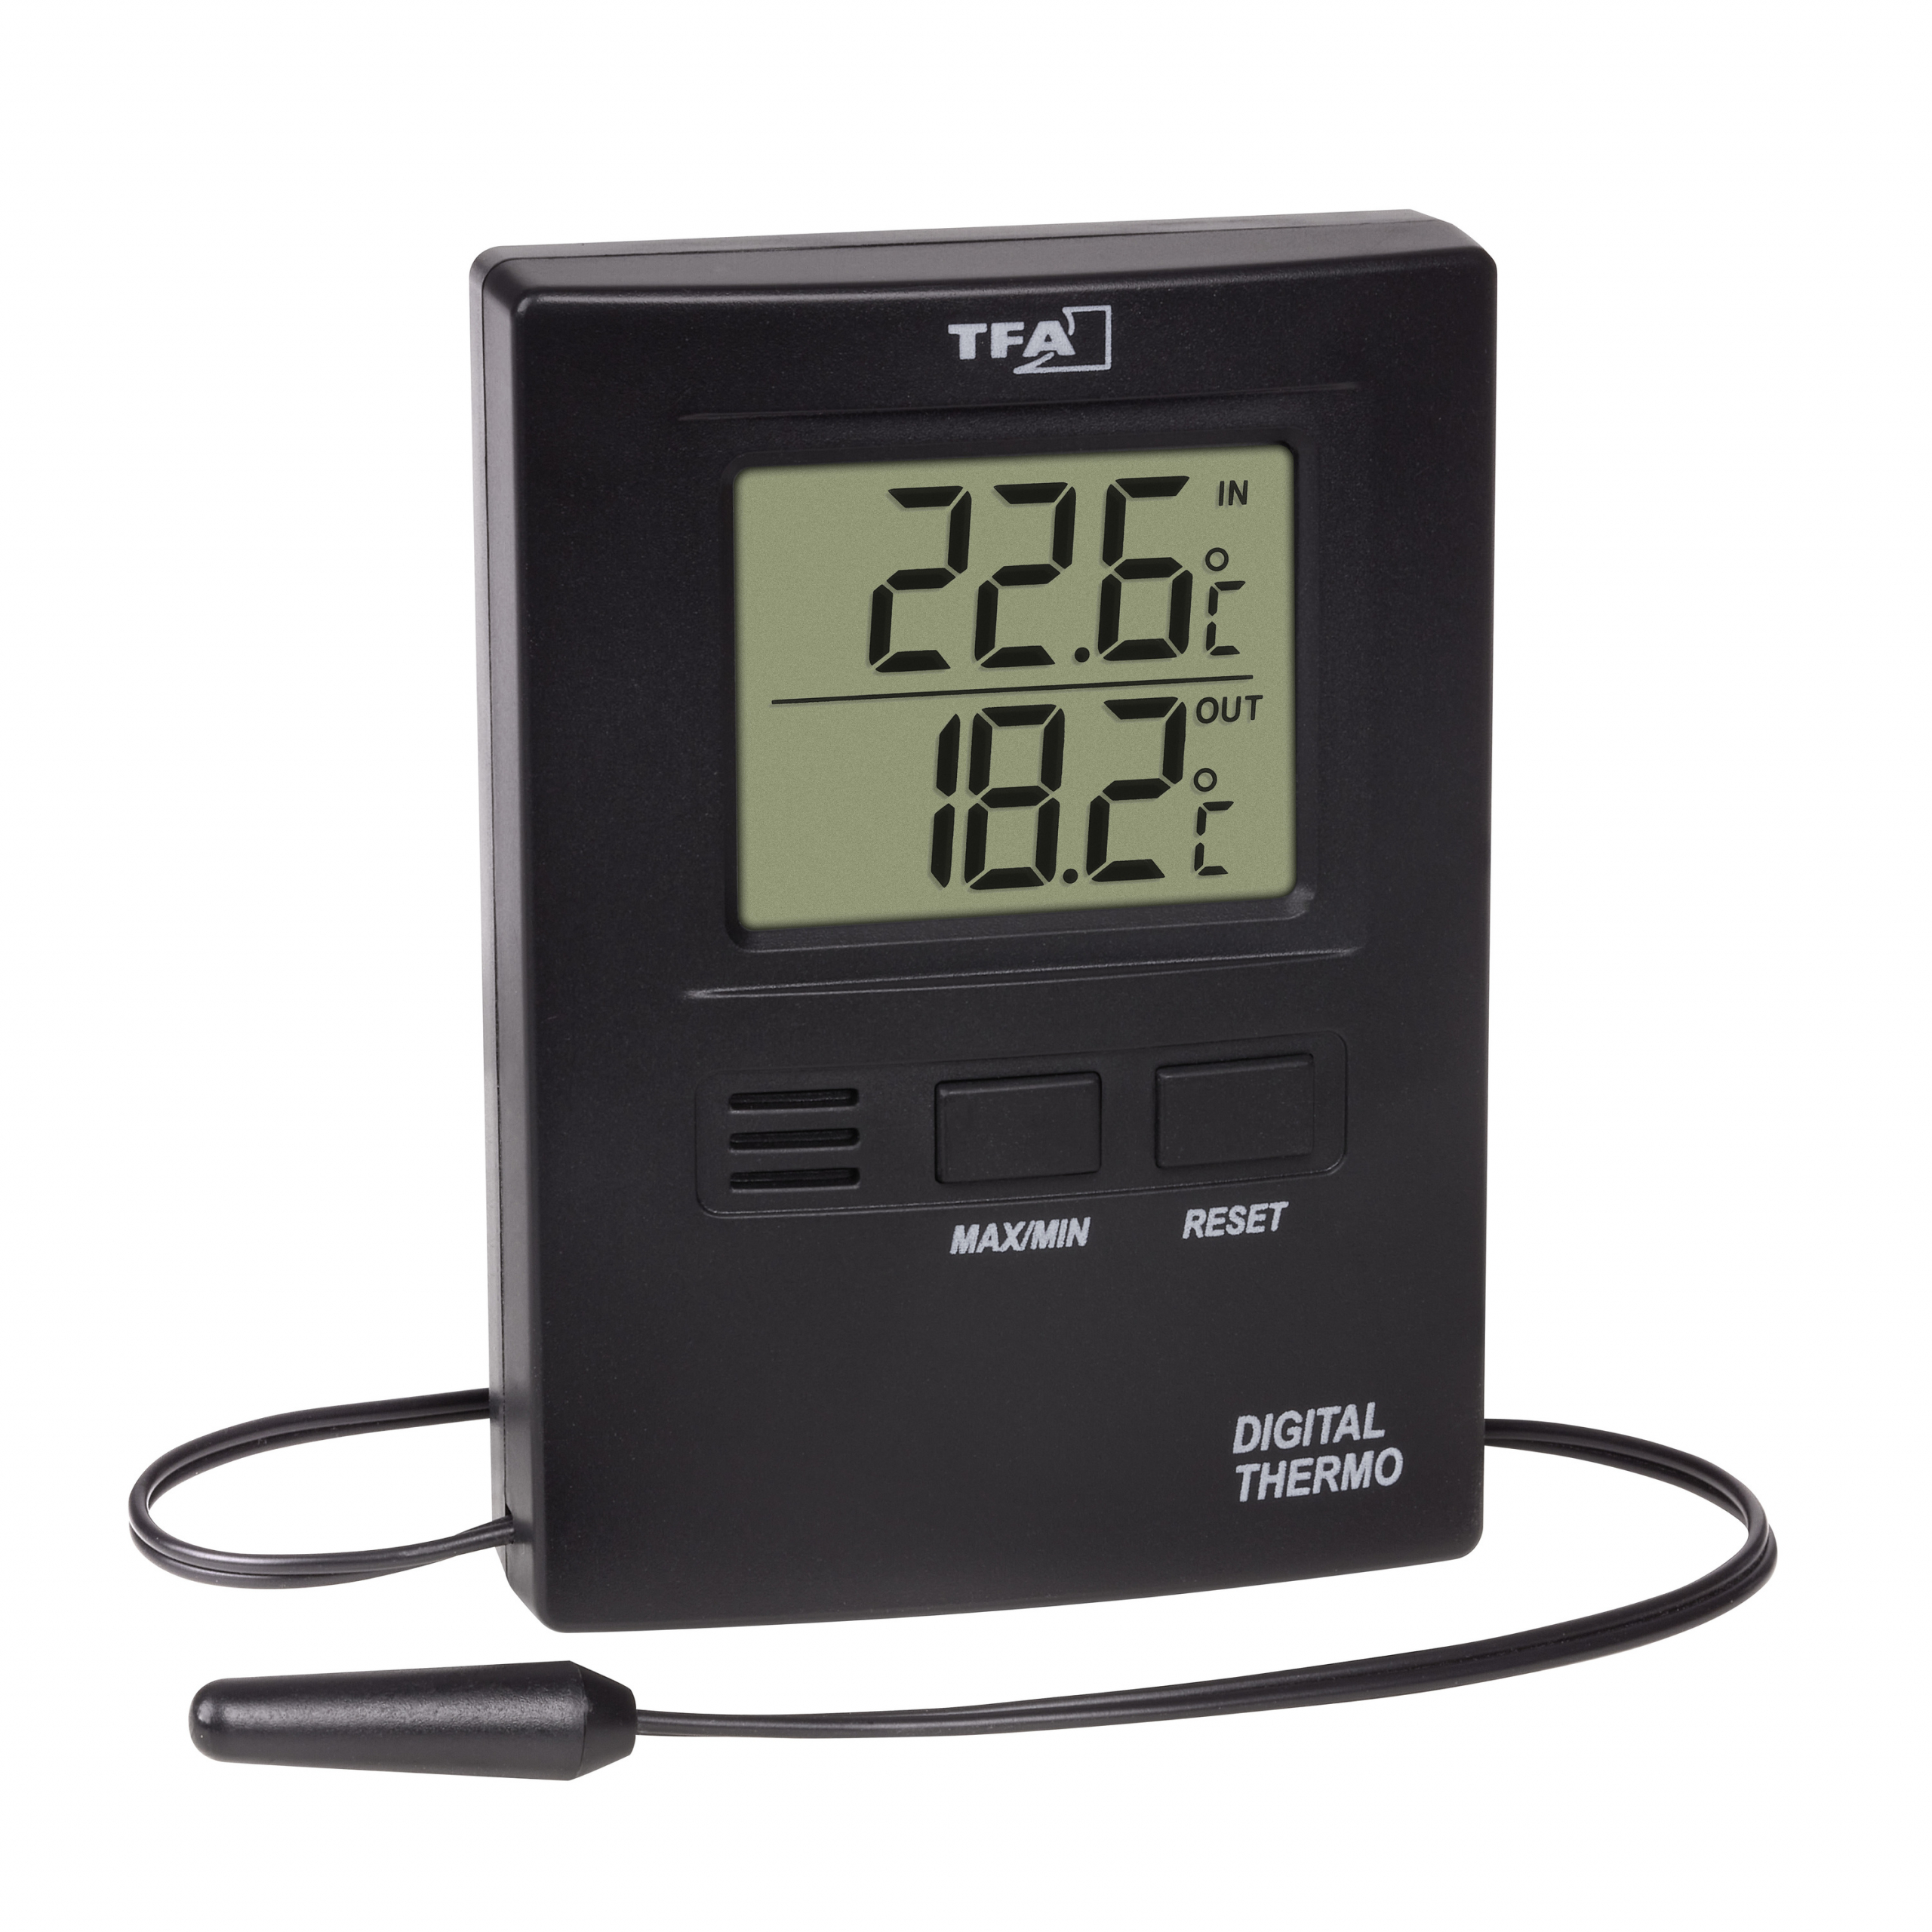 Innen-Außen-Thermometer Thermo, Thermometer (Innen-Außen, Min-Max, Funk), Temperatur und Überwachung, Messtechnik, Laborbedarf